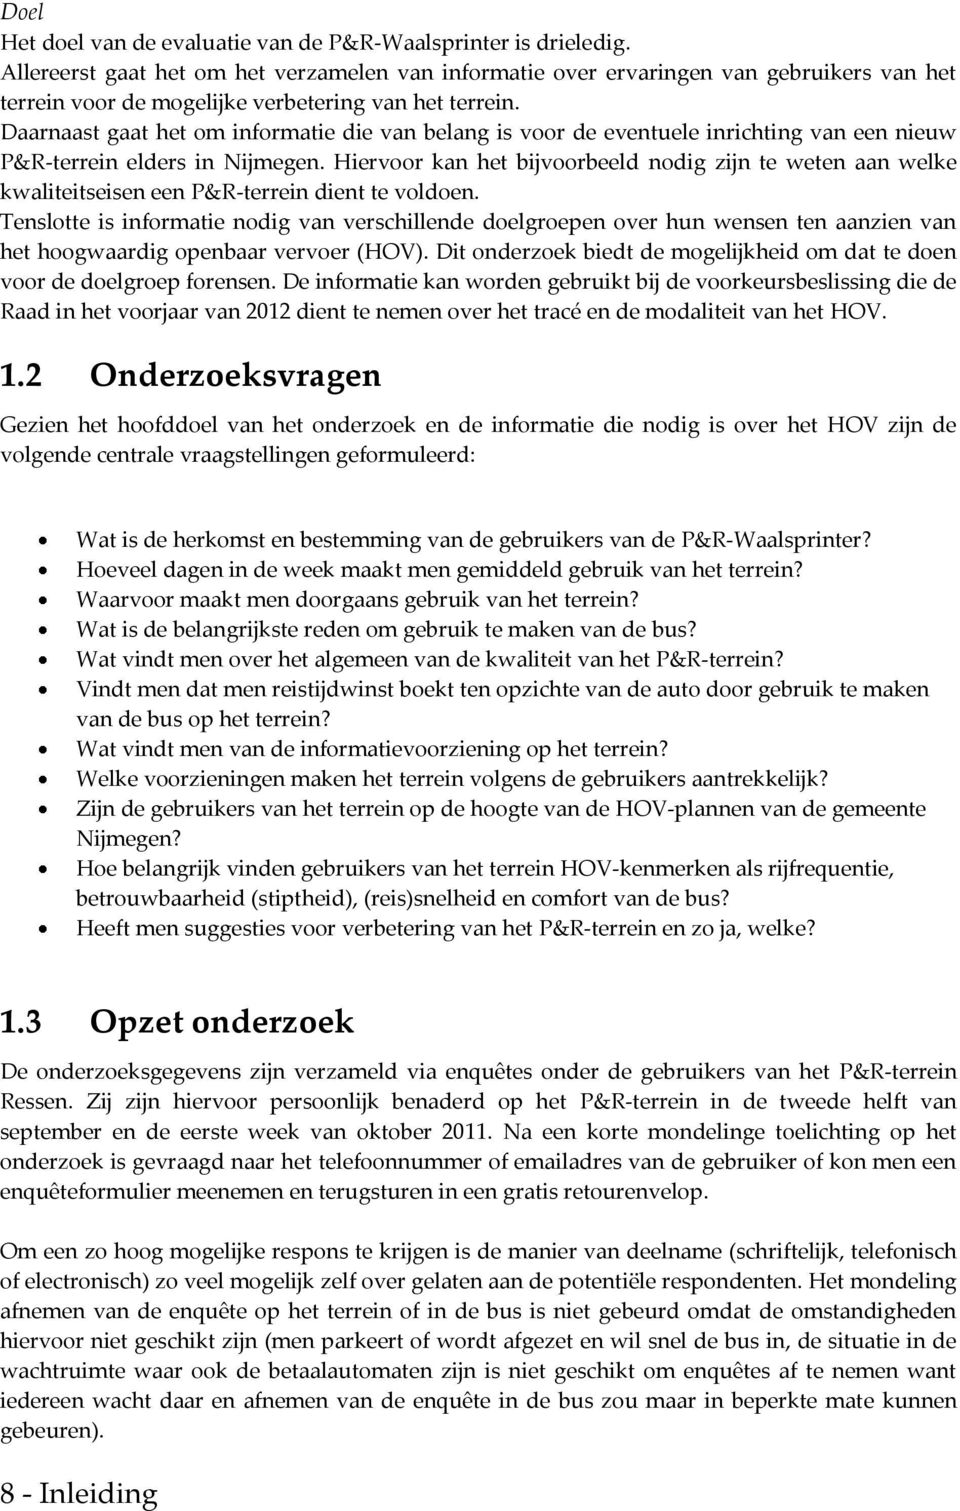 Daarnaast gaat het om informatie die van belang is voor de eventuele inrichting van een nieuw P&R-terrein elders in Nijmegen.